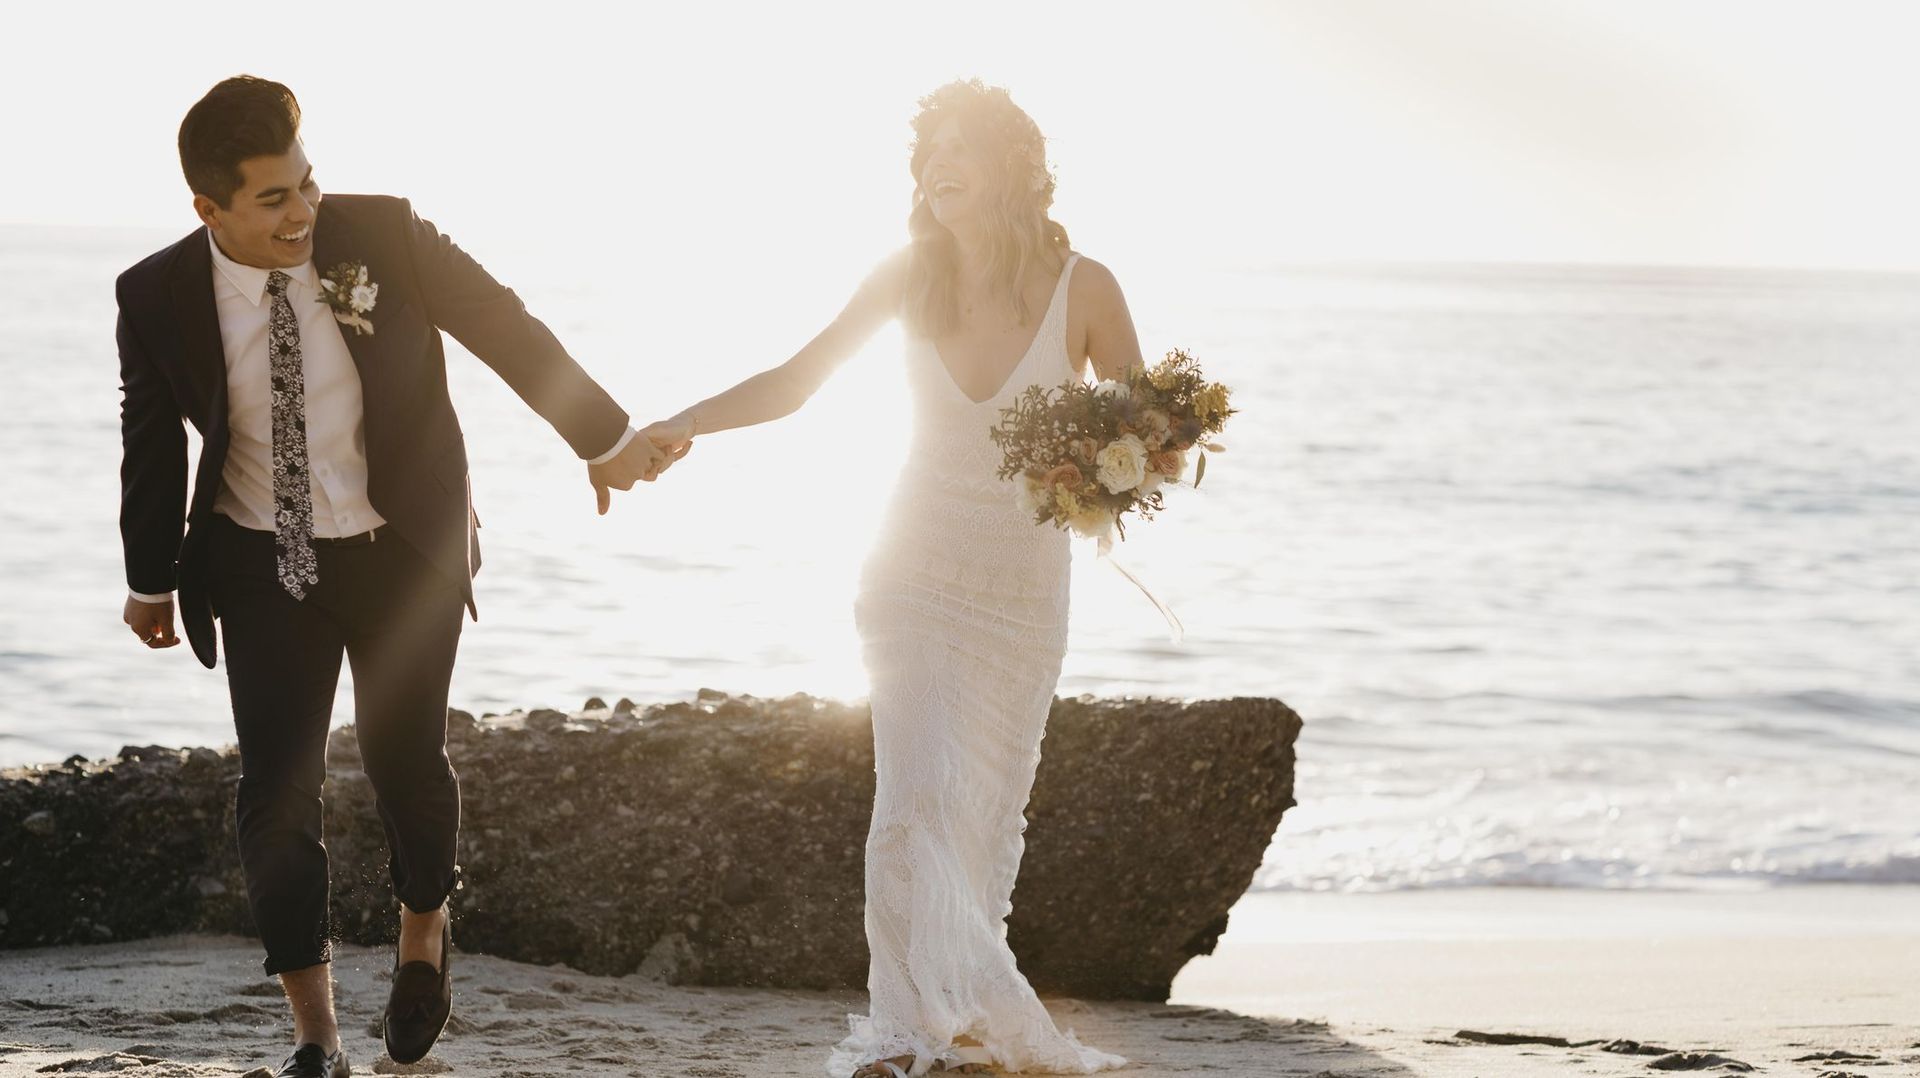 Le Maroc, la Grèce et la France, des destinations de rêve pour se marier, selon Pinterest.